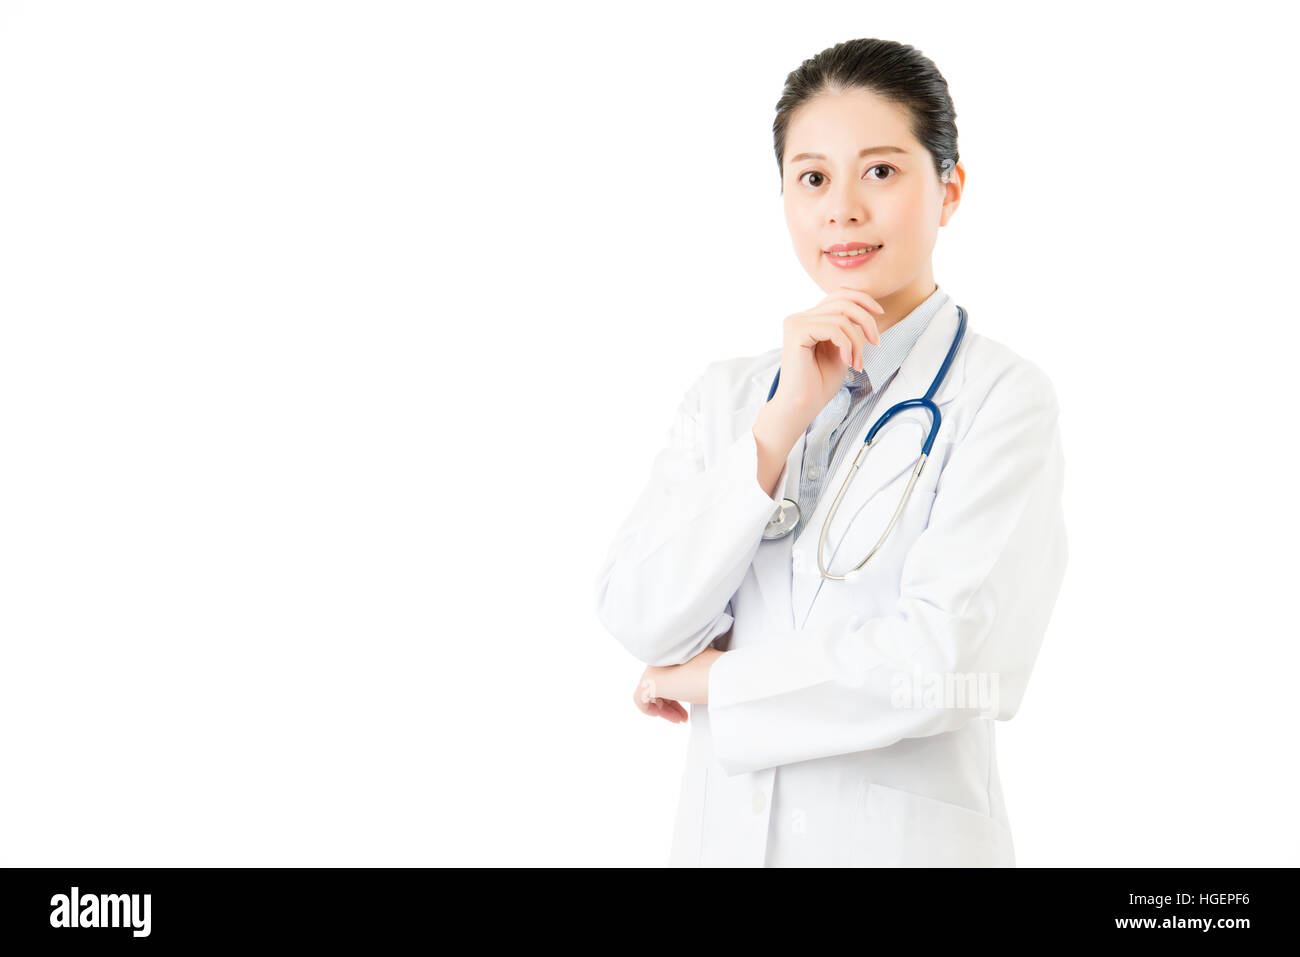 erfolgreichen asiatischen Arzt mit Stethoskop Hand am Kinn. isoliert auf weißem Hintergrund. Medizin und Gesundheit-Konzept Stockfoto